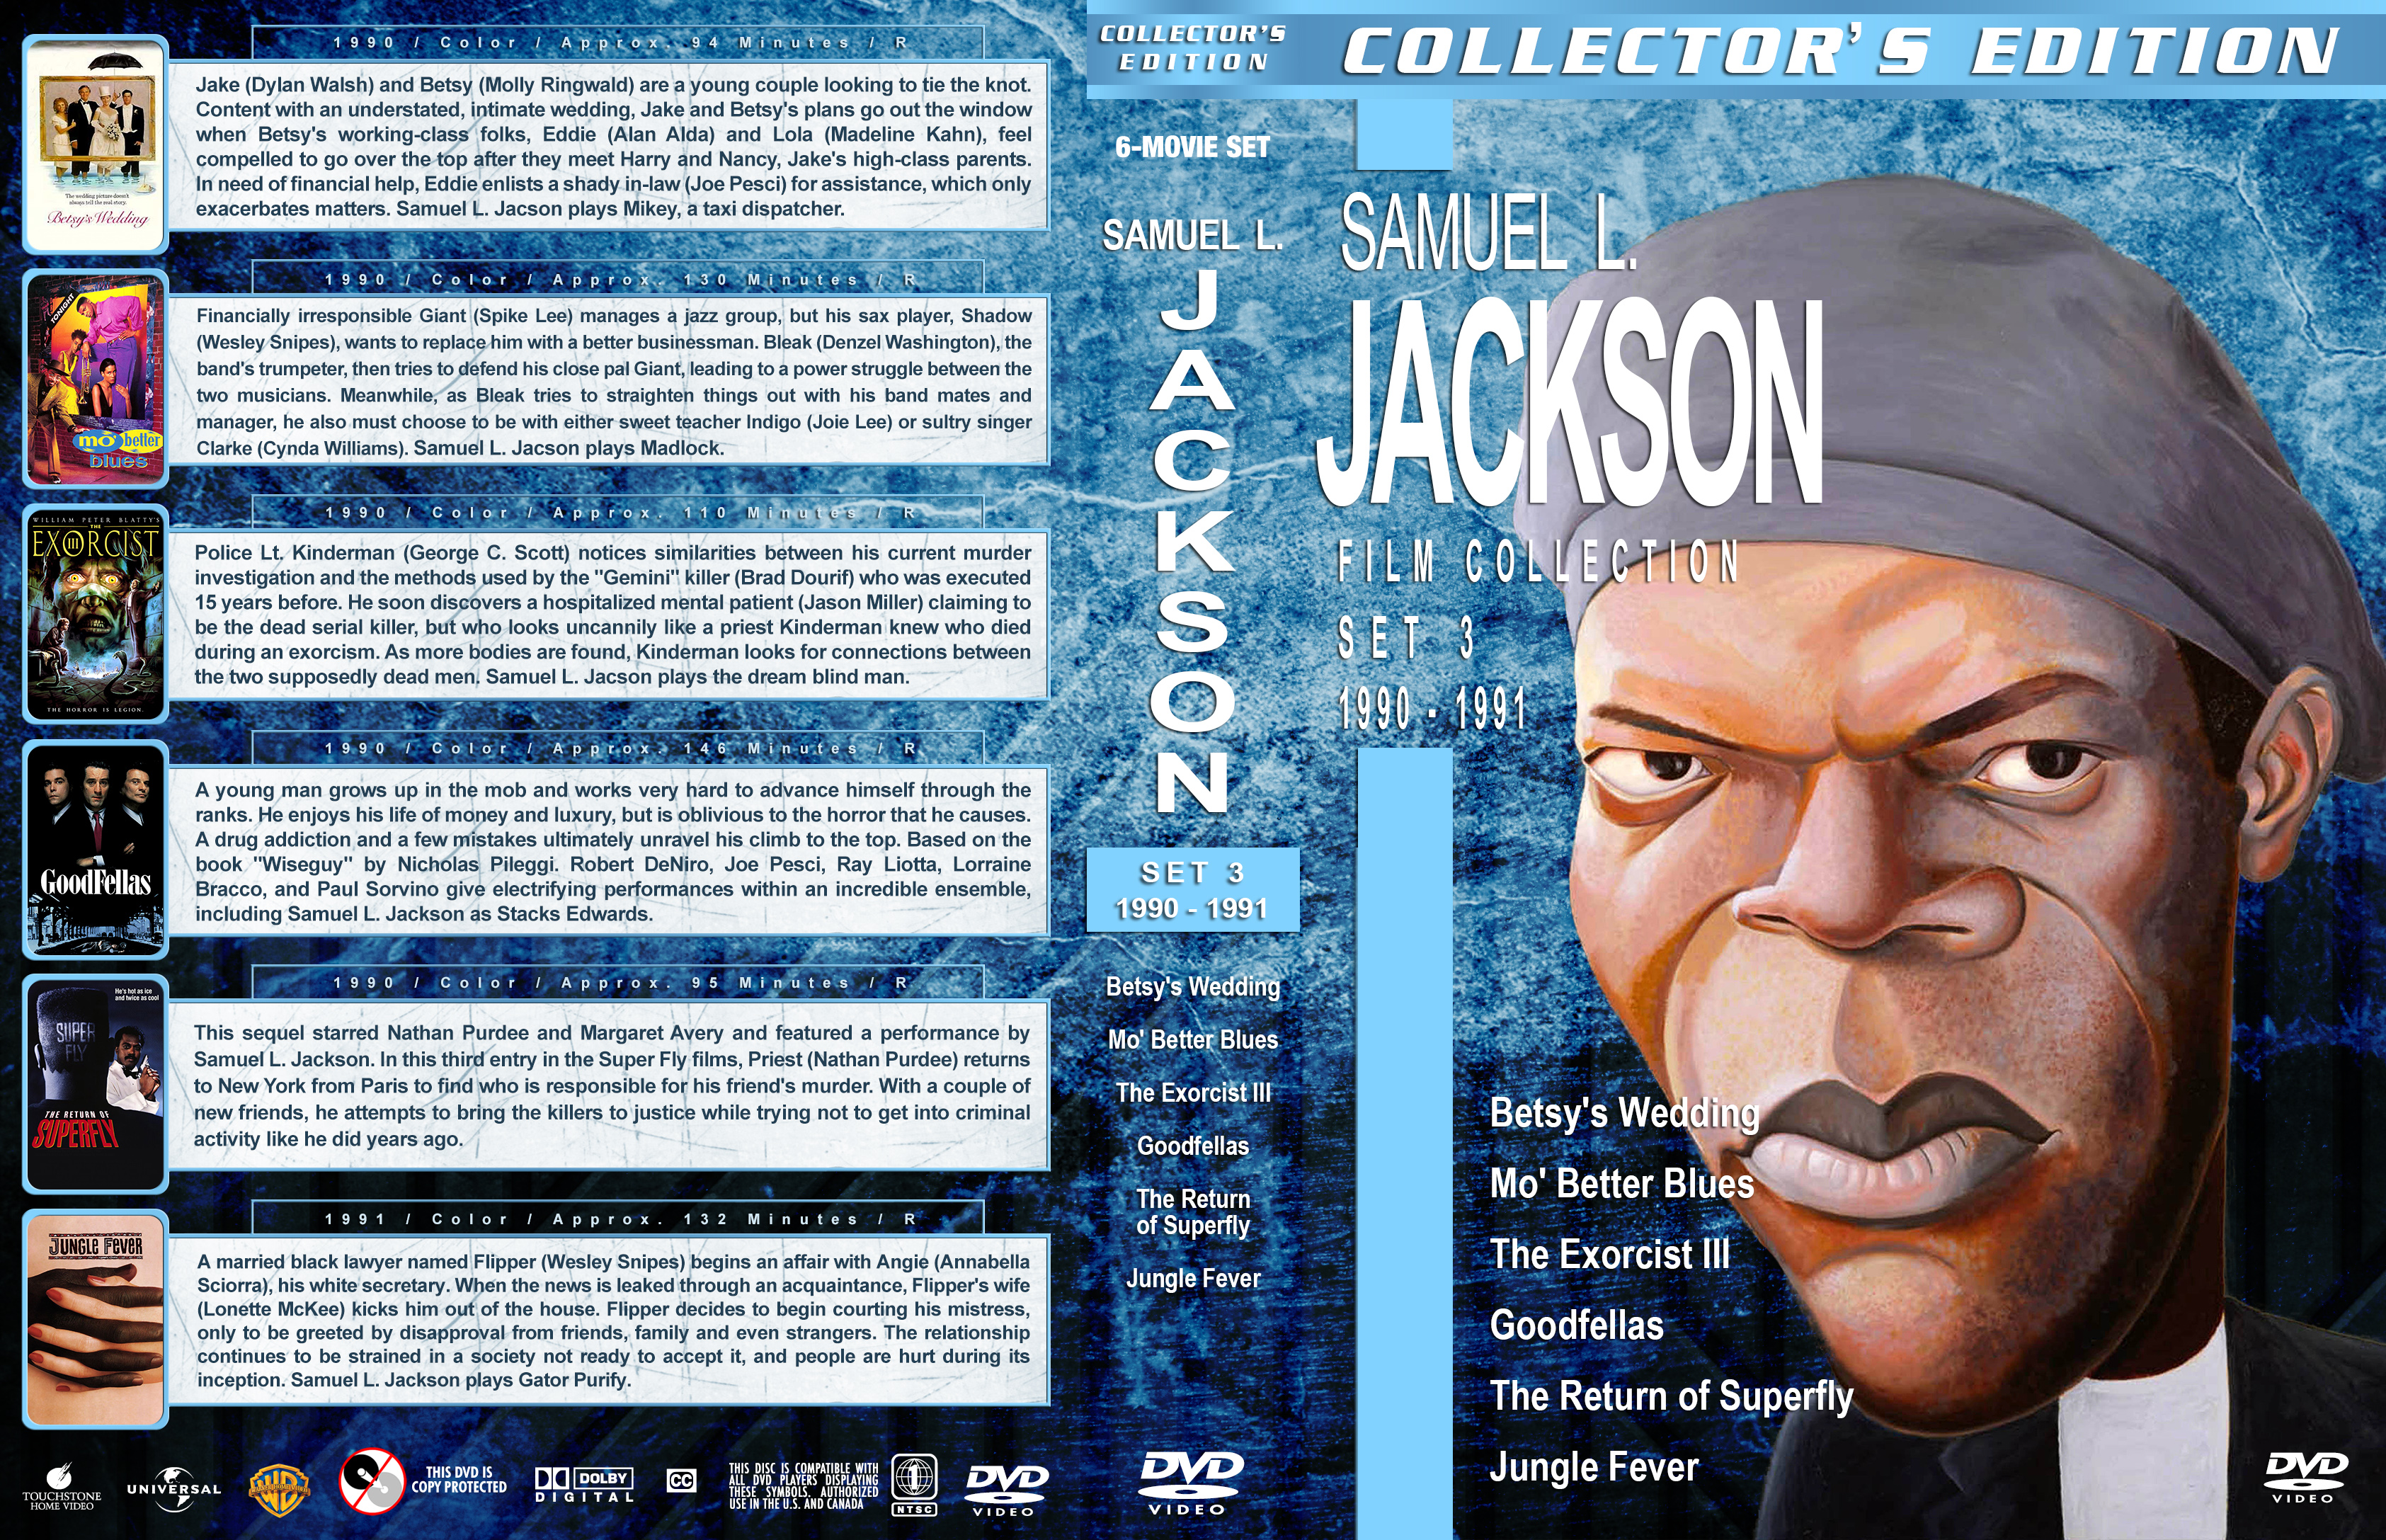 Samuel L Jackson Film Collection Set 3 1990 1991 Cover 1